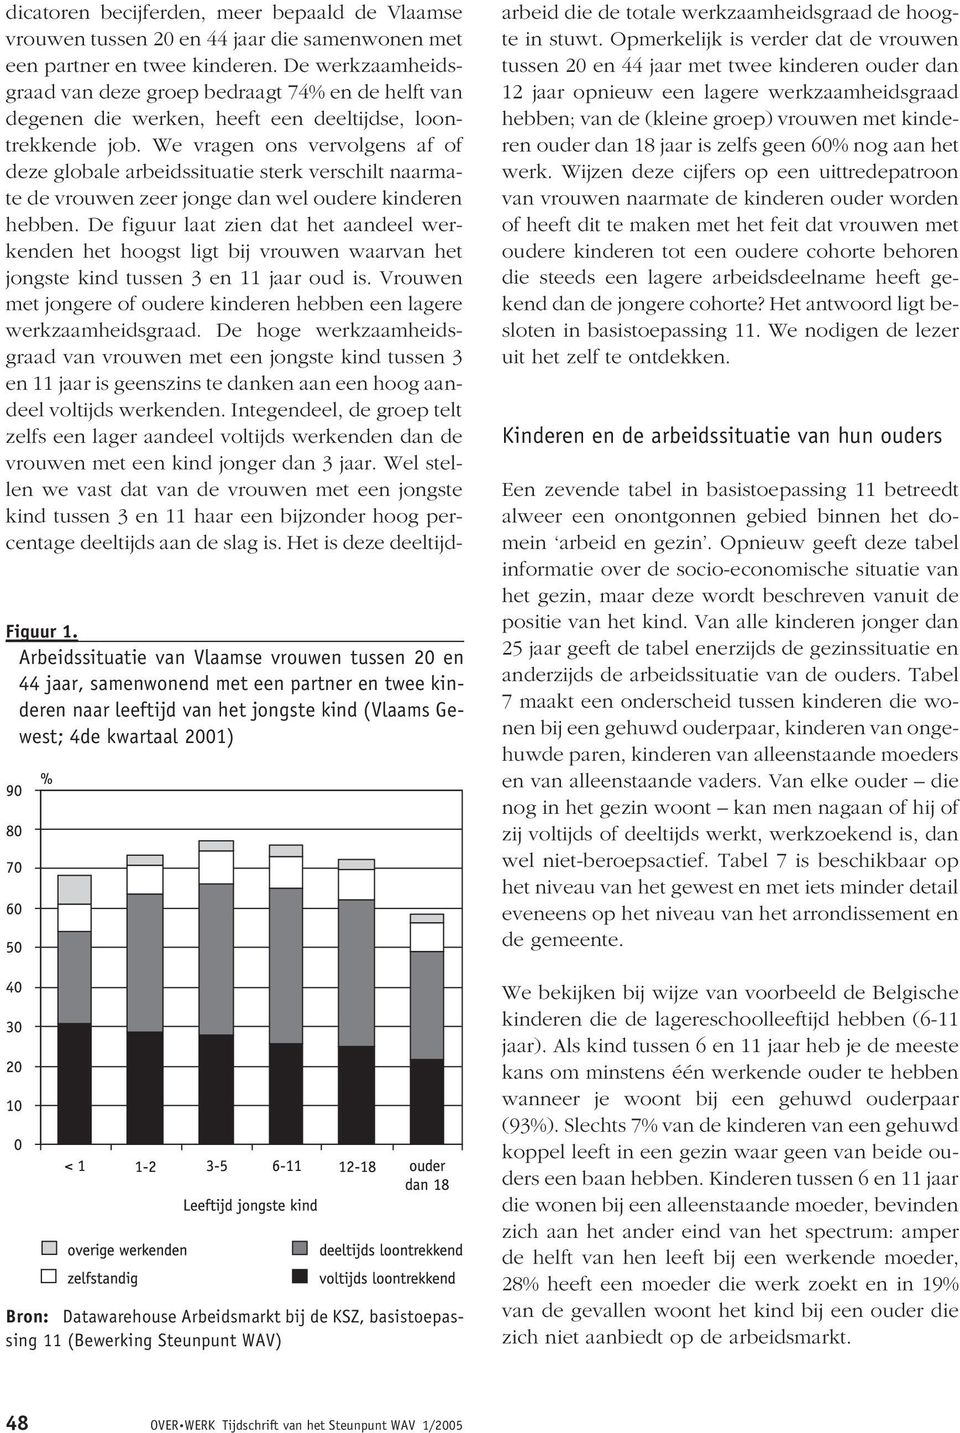 Arbeidsmarkt bij de KSZ, basistoepassing 11 (Bewerking Steunpunt WAV) dicatoren becijferden, meer bepaald de Vlaamse vrouwen tussen 20 en 44 jaar die samenwonen met een partner en twee kinderen.